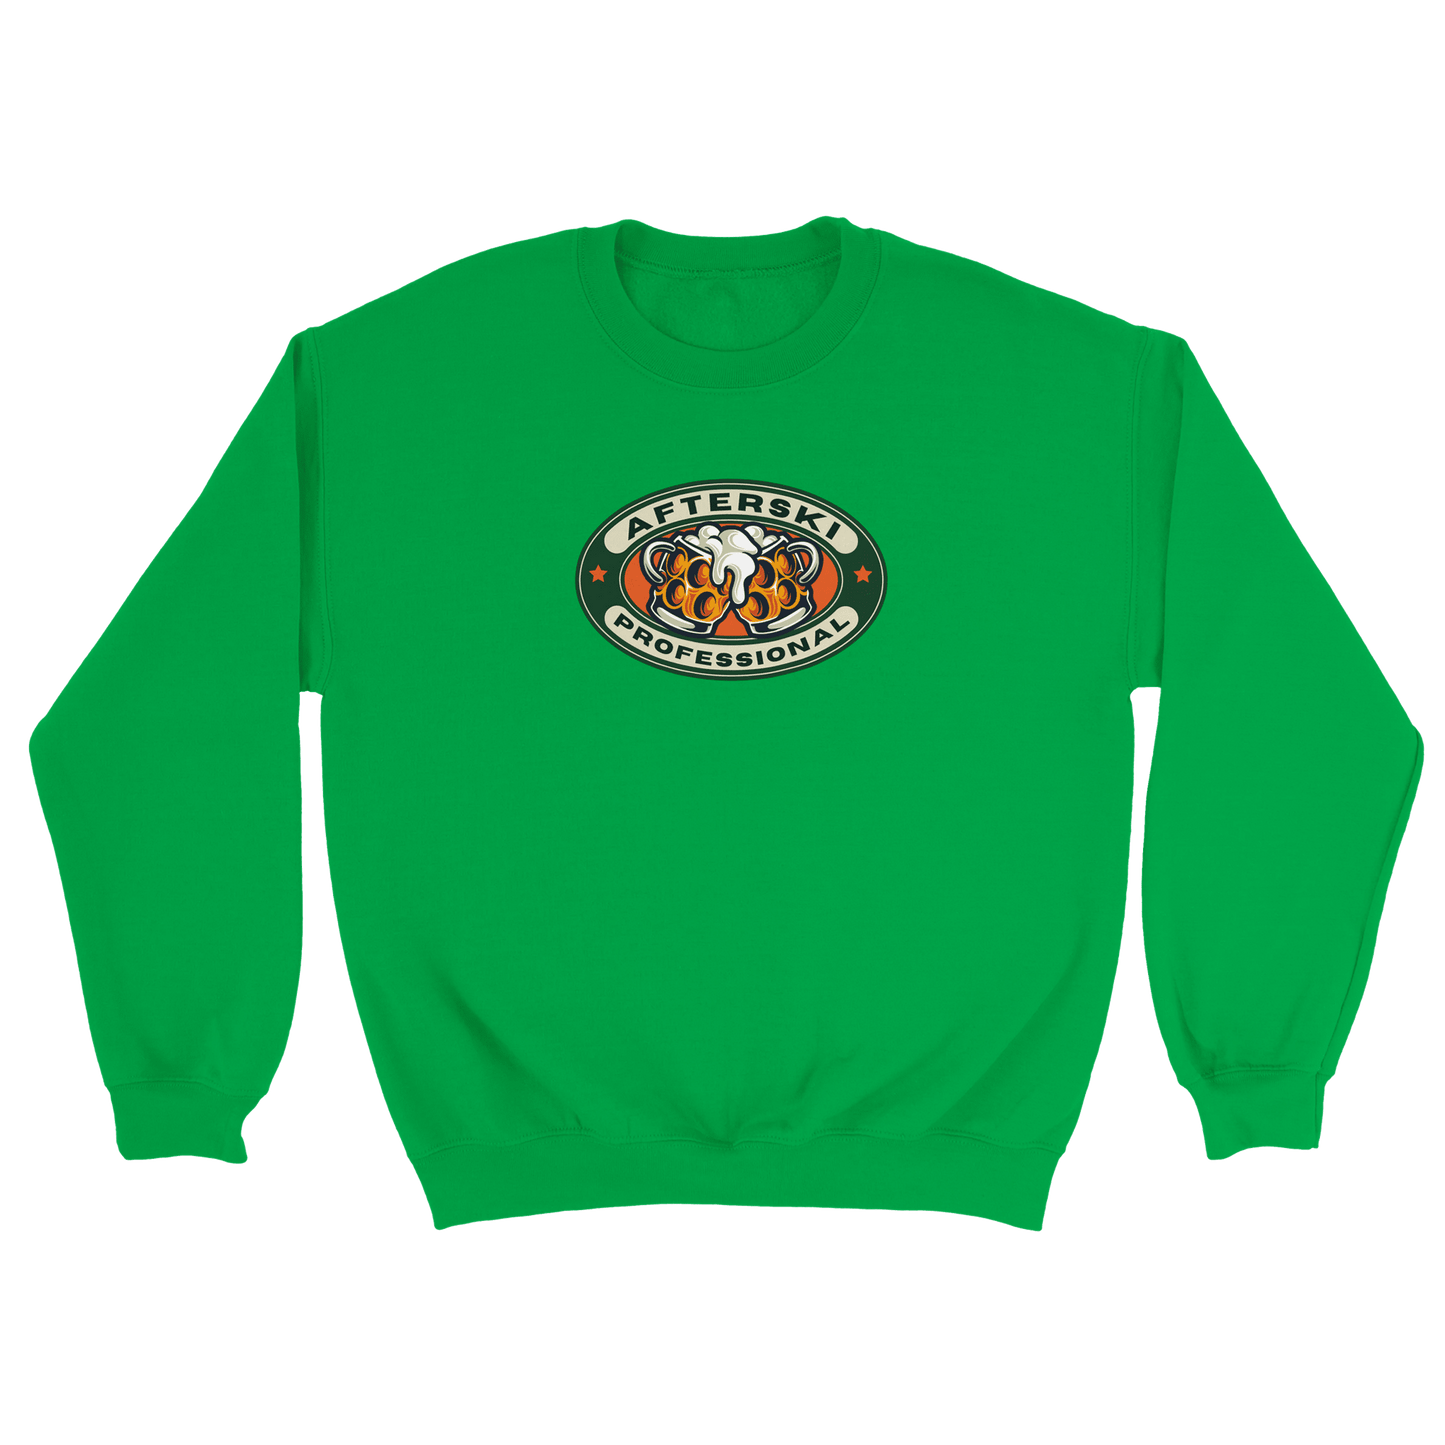 Afterski Professional - Sweatshirt Grön